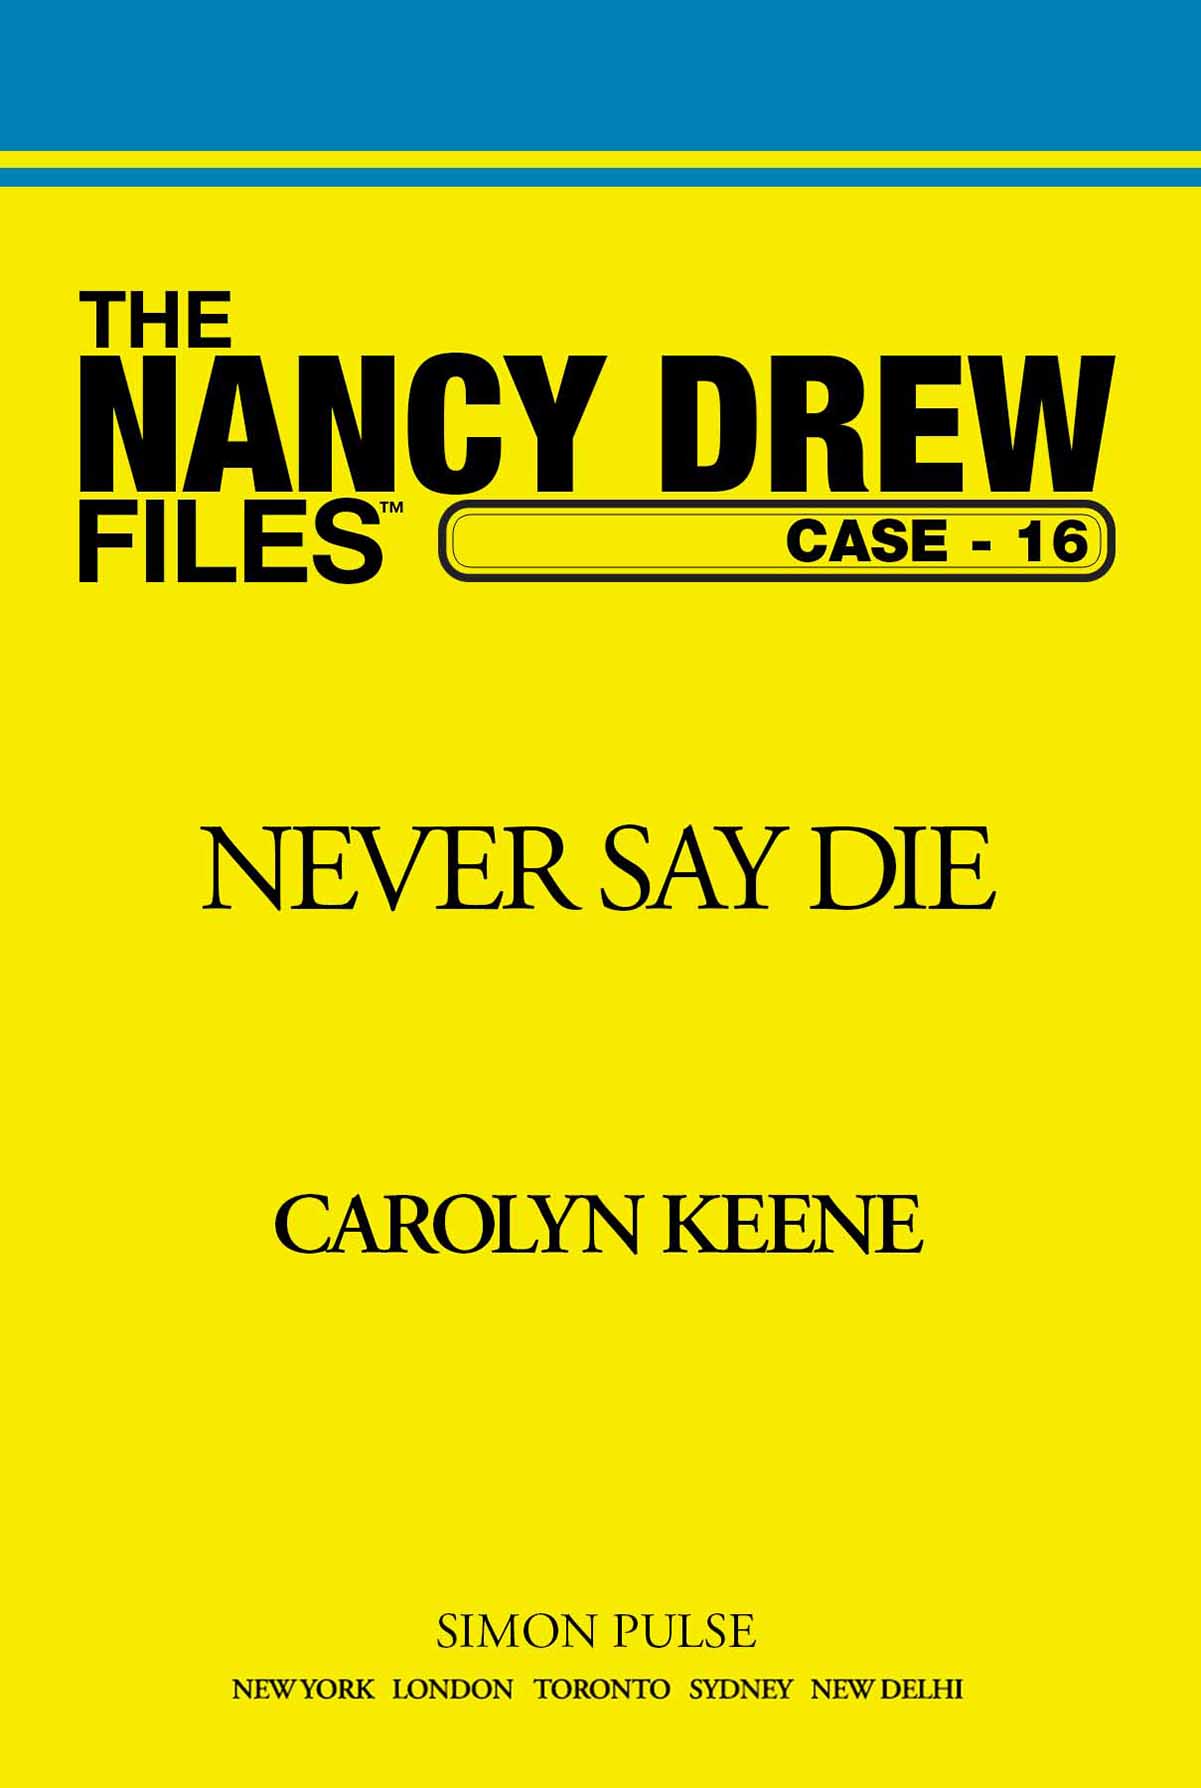 Never Say Die by Carolyn Keene